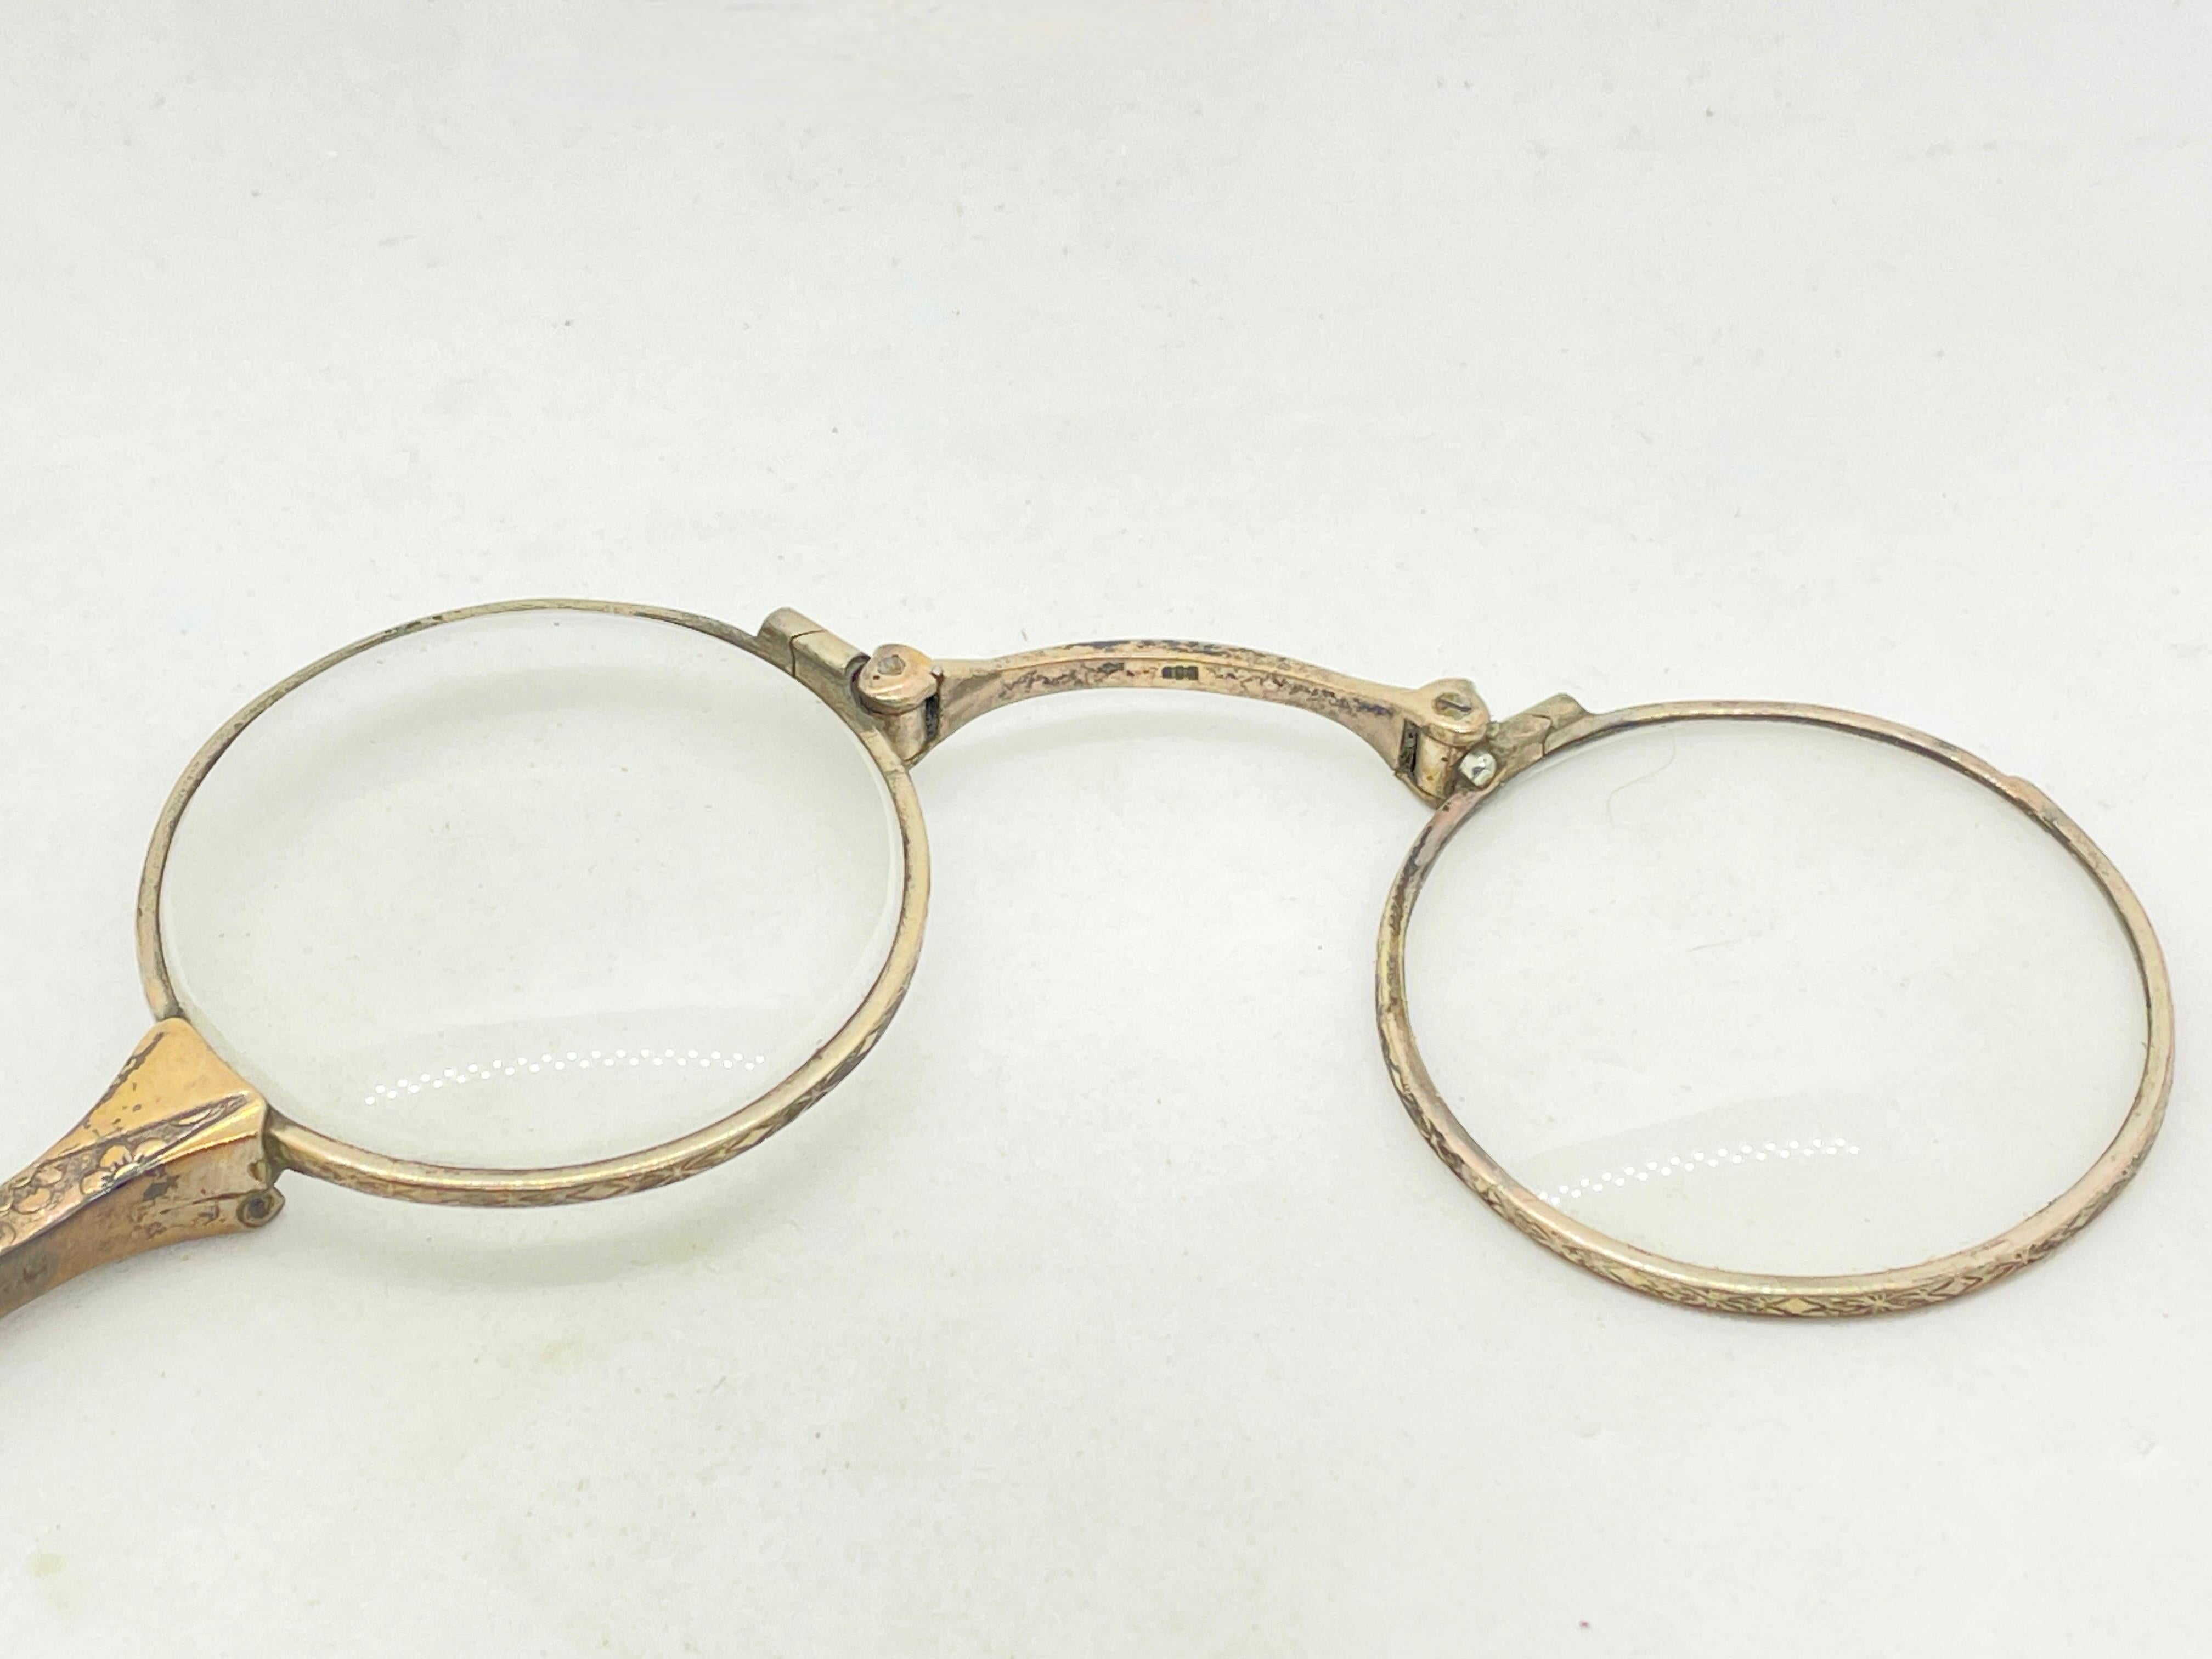 lorgnette glasses for sale